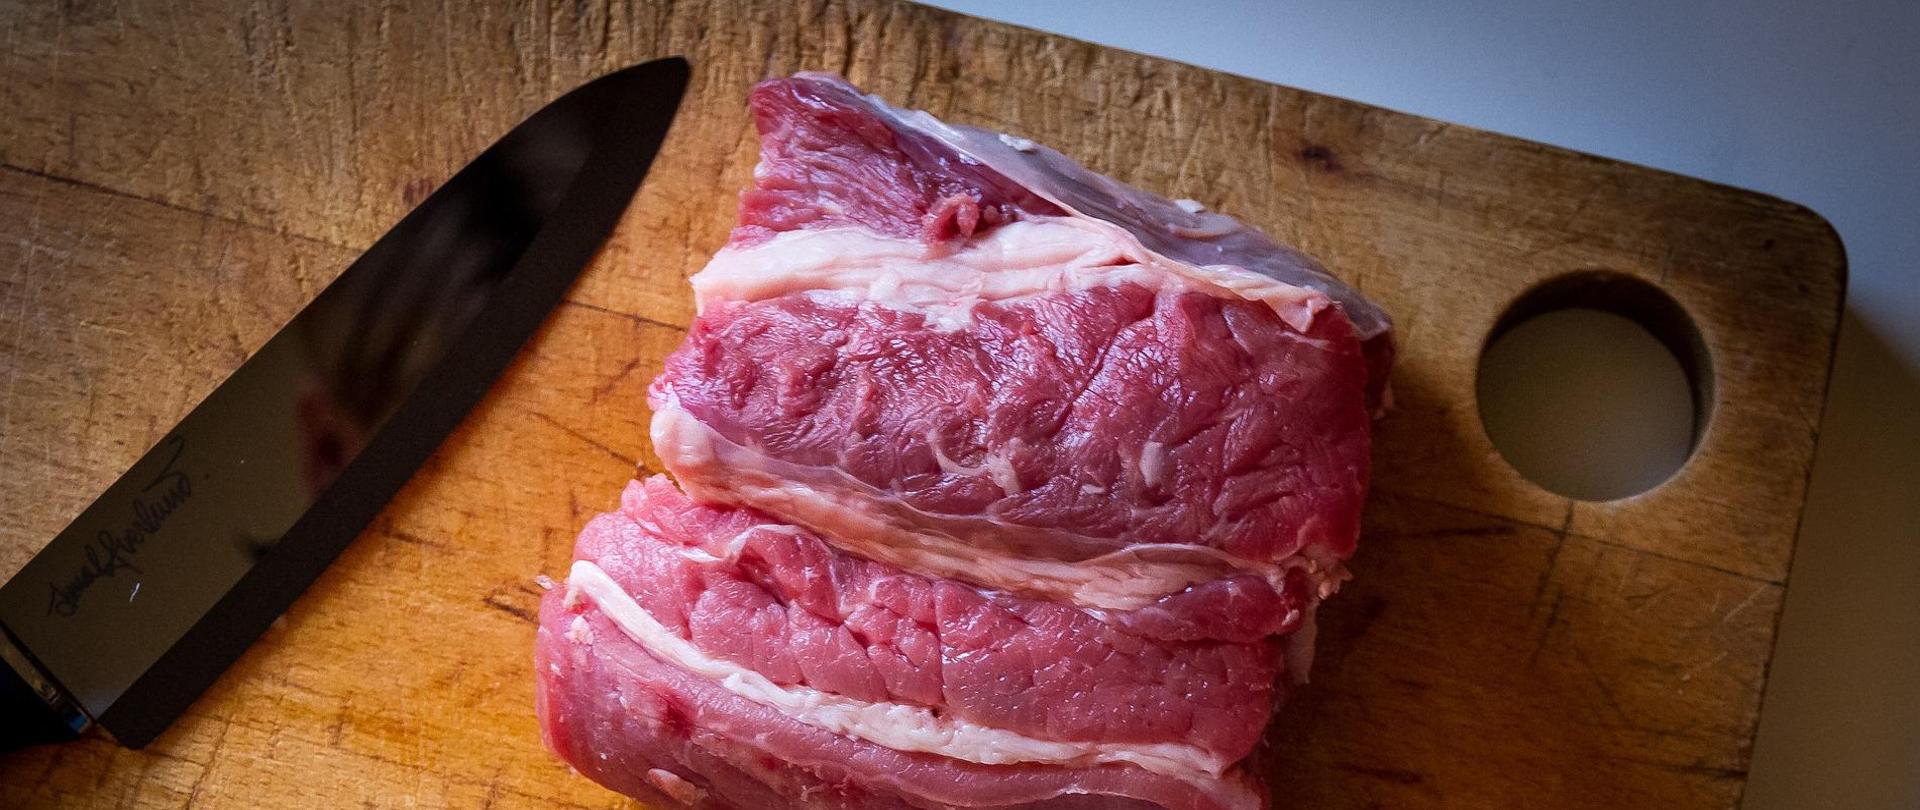 Na drewnianej desce znajduje się kawałek mięsa wołowego. Z lewej strony obok mięsa leży nóż.